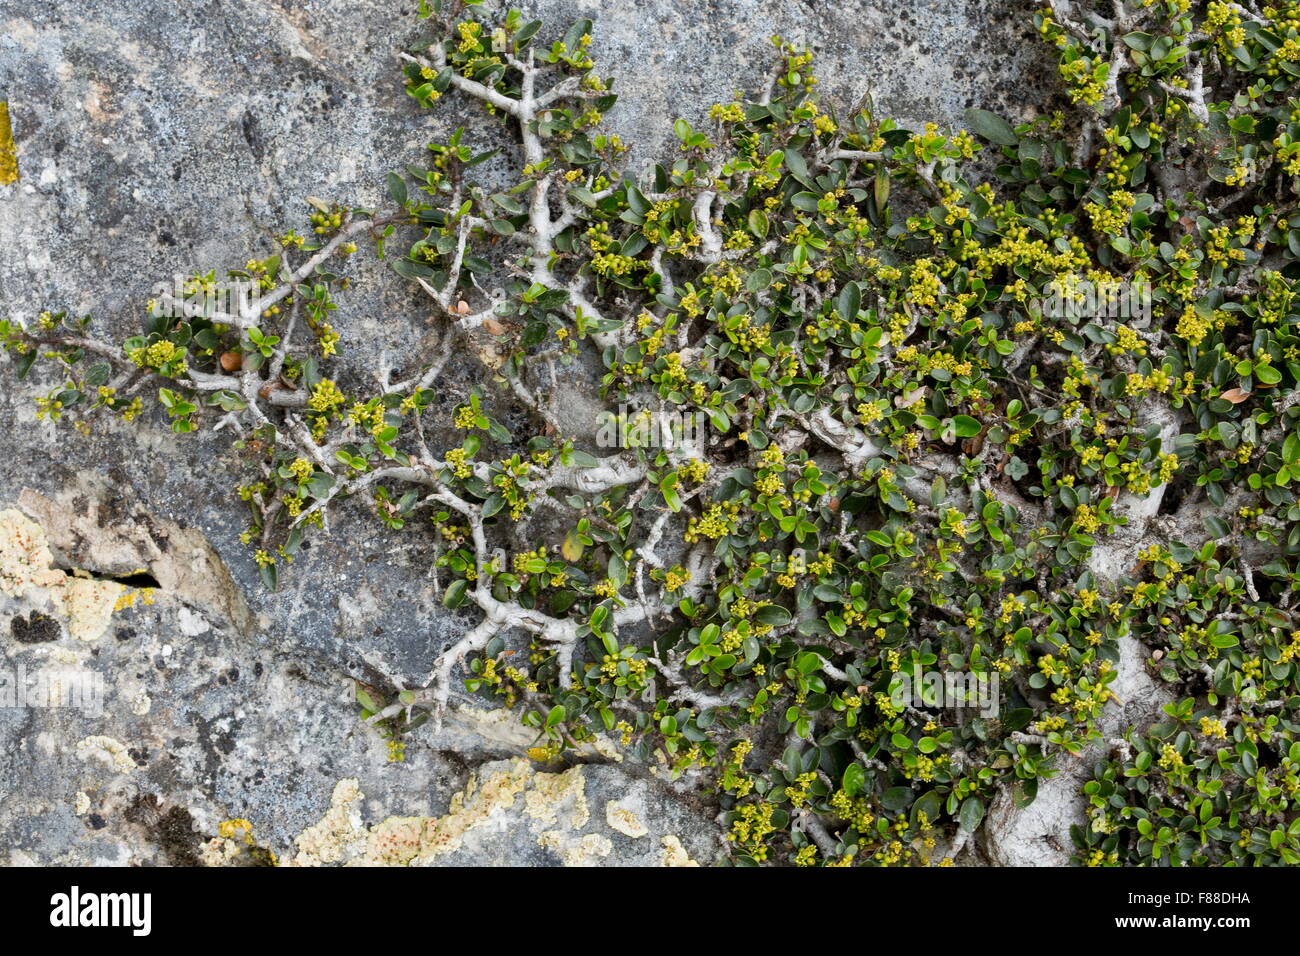 A prostrate buckthorn, on cliff face: Rhamnus alaternus ssp myrtifolius, in flower. Sierra de las nieves, Spain Stock Photo